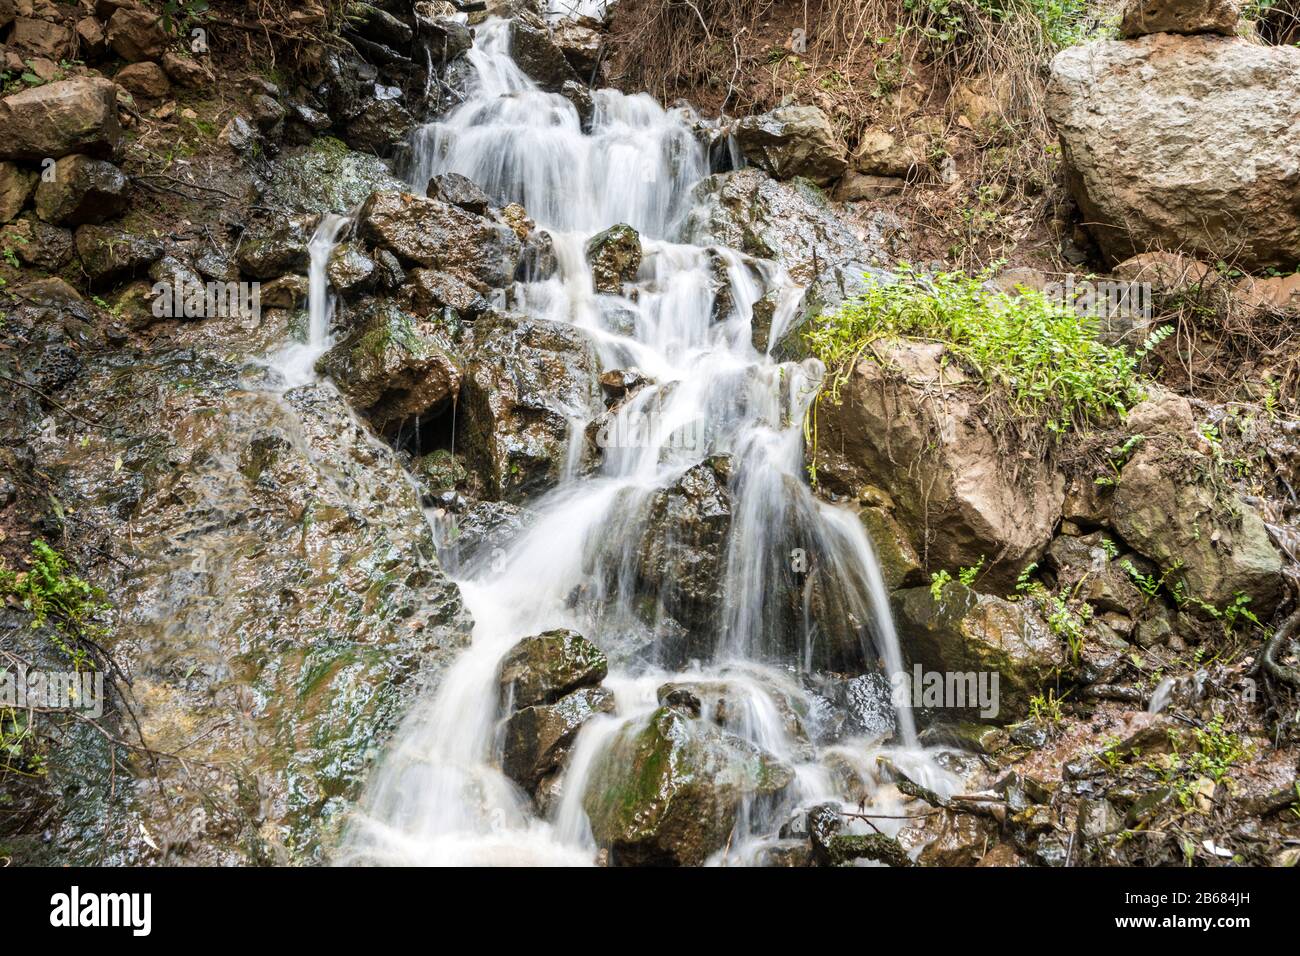 Cascading waterfall in Qadisha valley, Lebanon Stock Photo